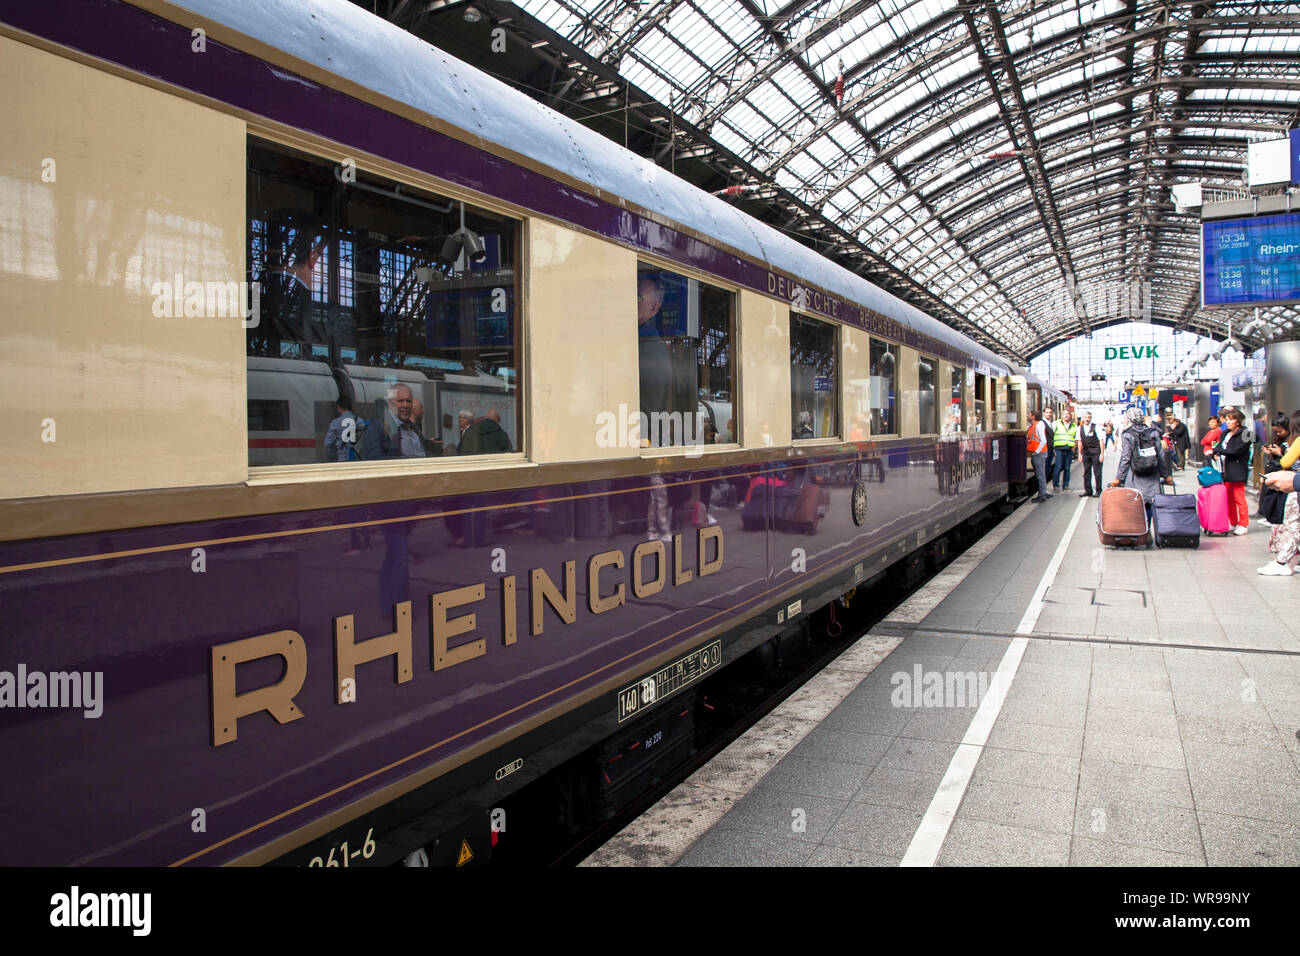 historical Rheingold train in the main station, Cologne, Germany.  historischer Rheingold Zug im Hauptbahnhof, Koeln, Deutschland. Stock Photo